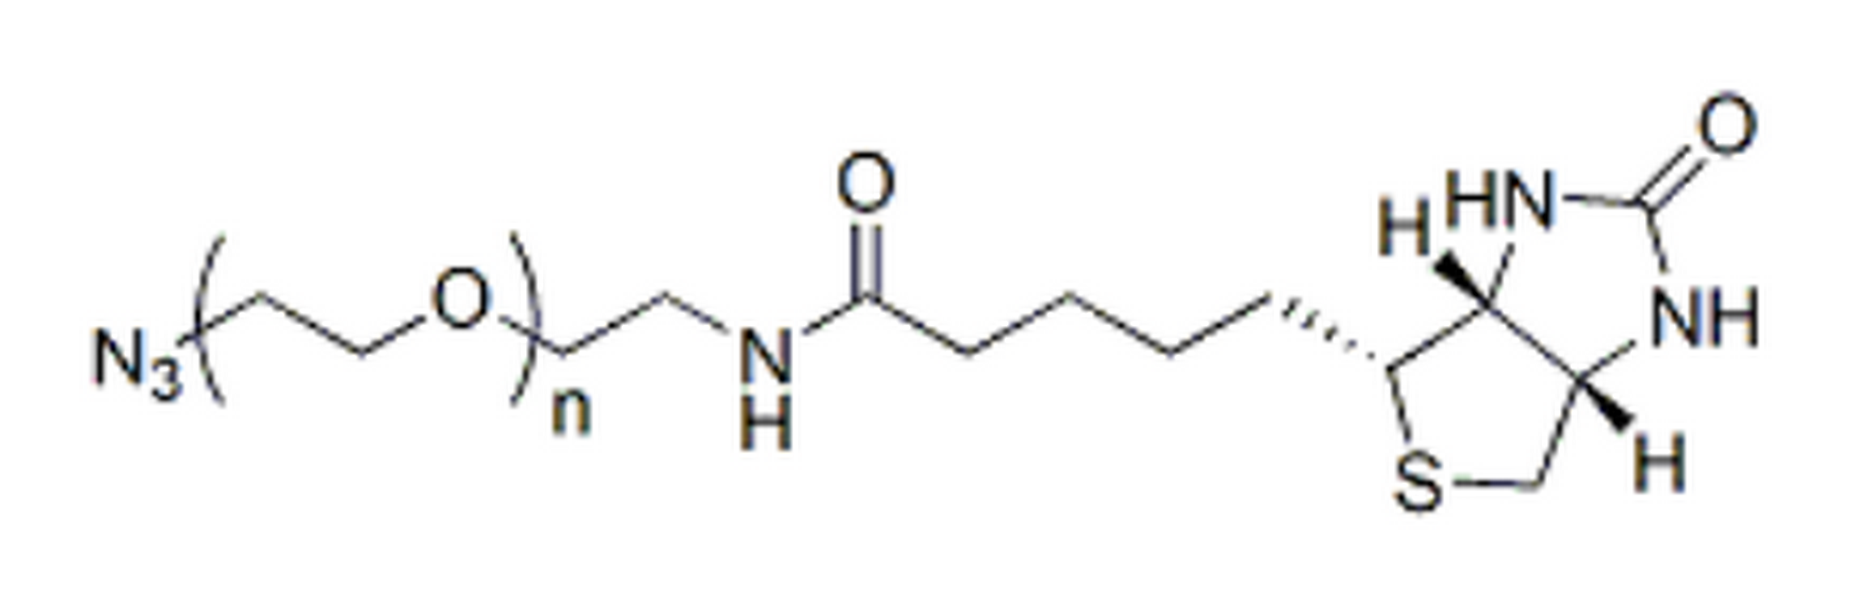 Biotin-PEG-azide, MW 3.4K